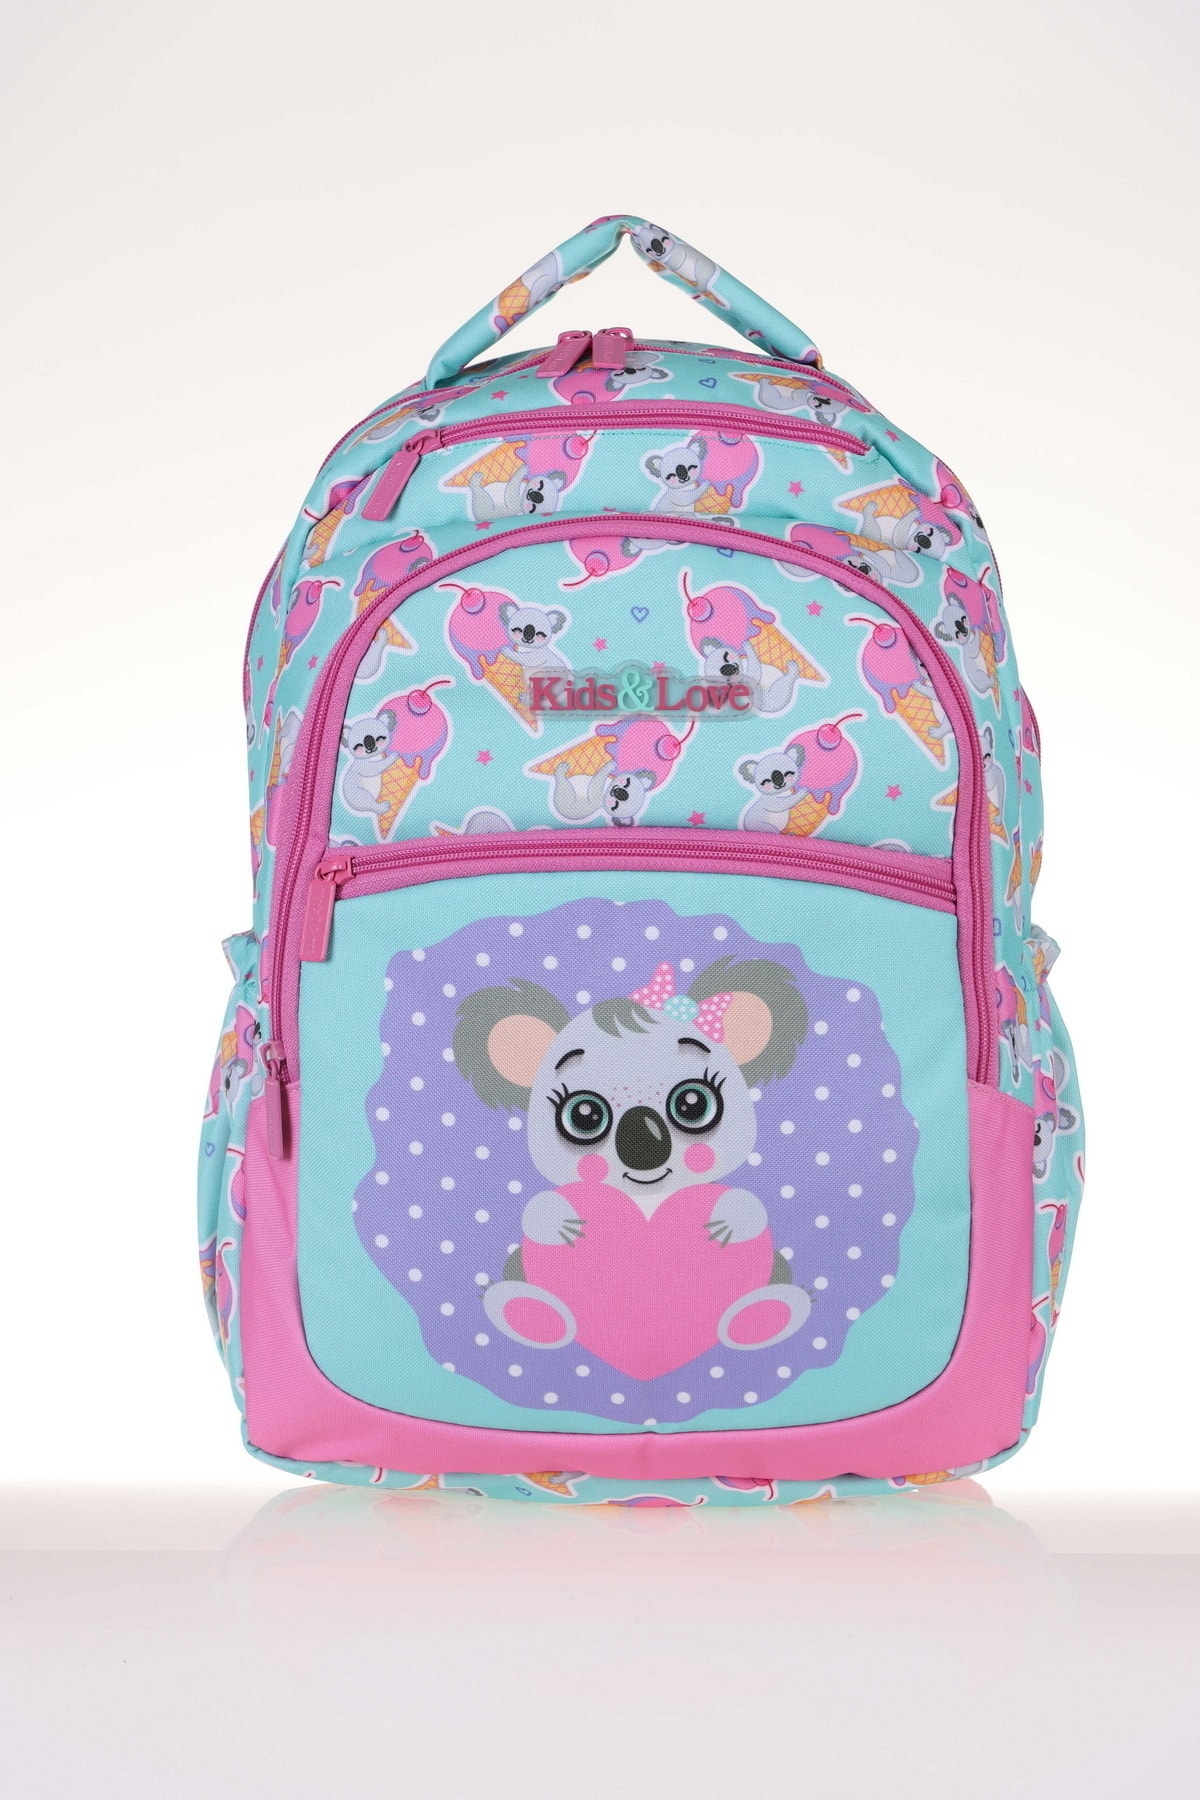 KAUKKO Kids & Love Design Koala Okul Çantası 39x29x16 (l5076)